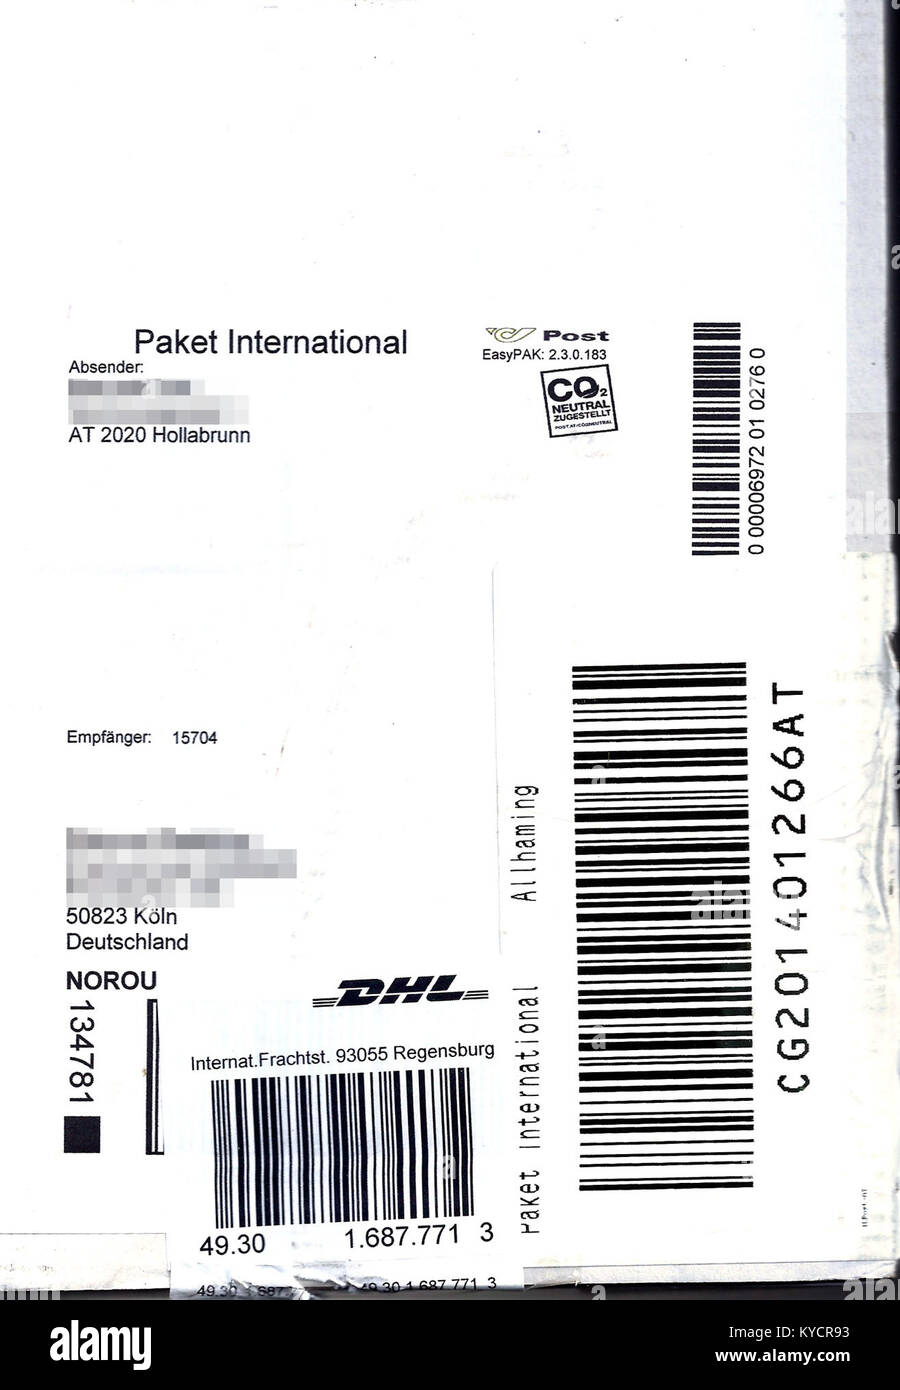 Paketaufkleber Österreiche Post - Paket International - nach Deutschland  2016 Stock Photo - Alamy